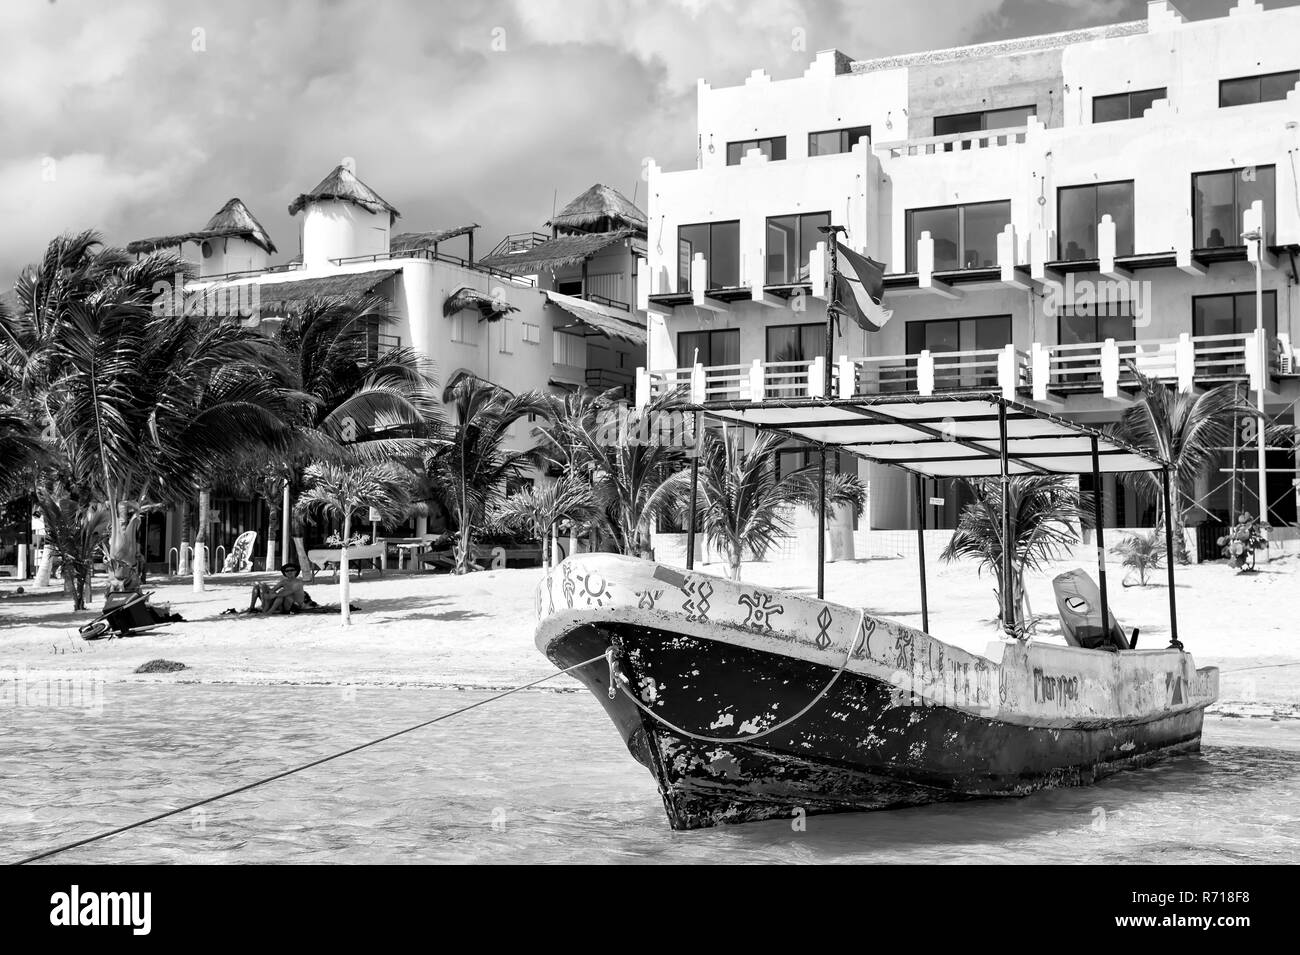 Costa Maya, Messico - 01 Febbraio 2016: nave con bandiera sulla spiaggia tropicale sul mare cristallino o acqua oceanica, sabbia bianca, verde delle palme, località turistica sulla giornata di sole. Le vacanze estive, il concetto di viaggio Foto Stock